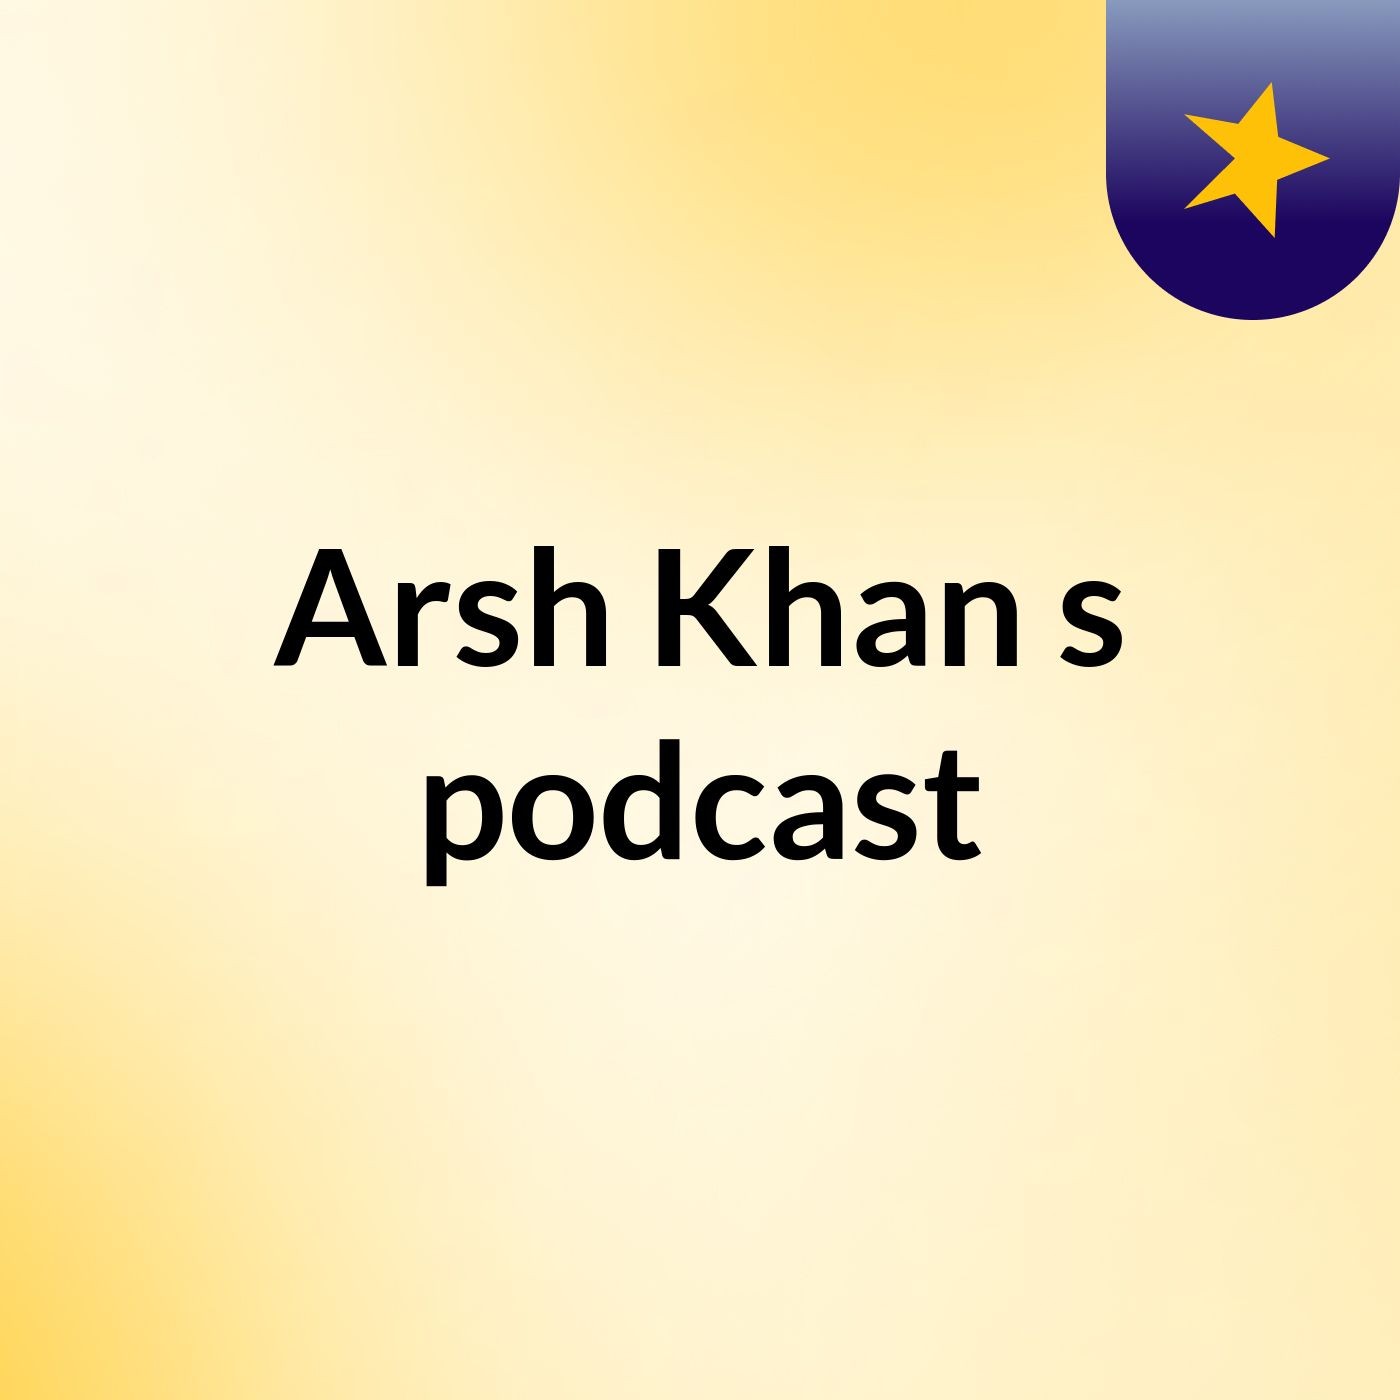 Episode 8 - Arsh Khan's podcast